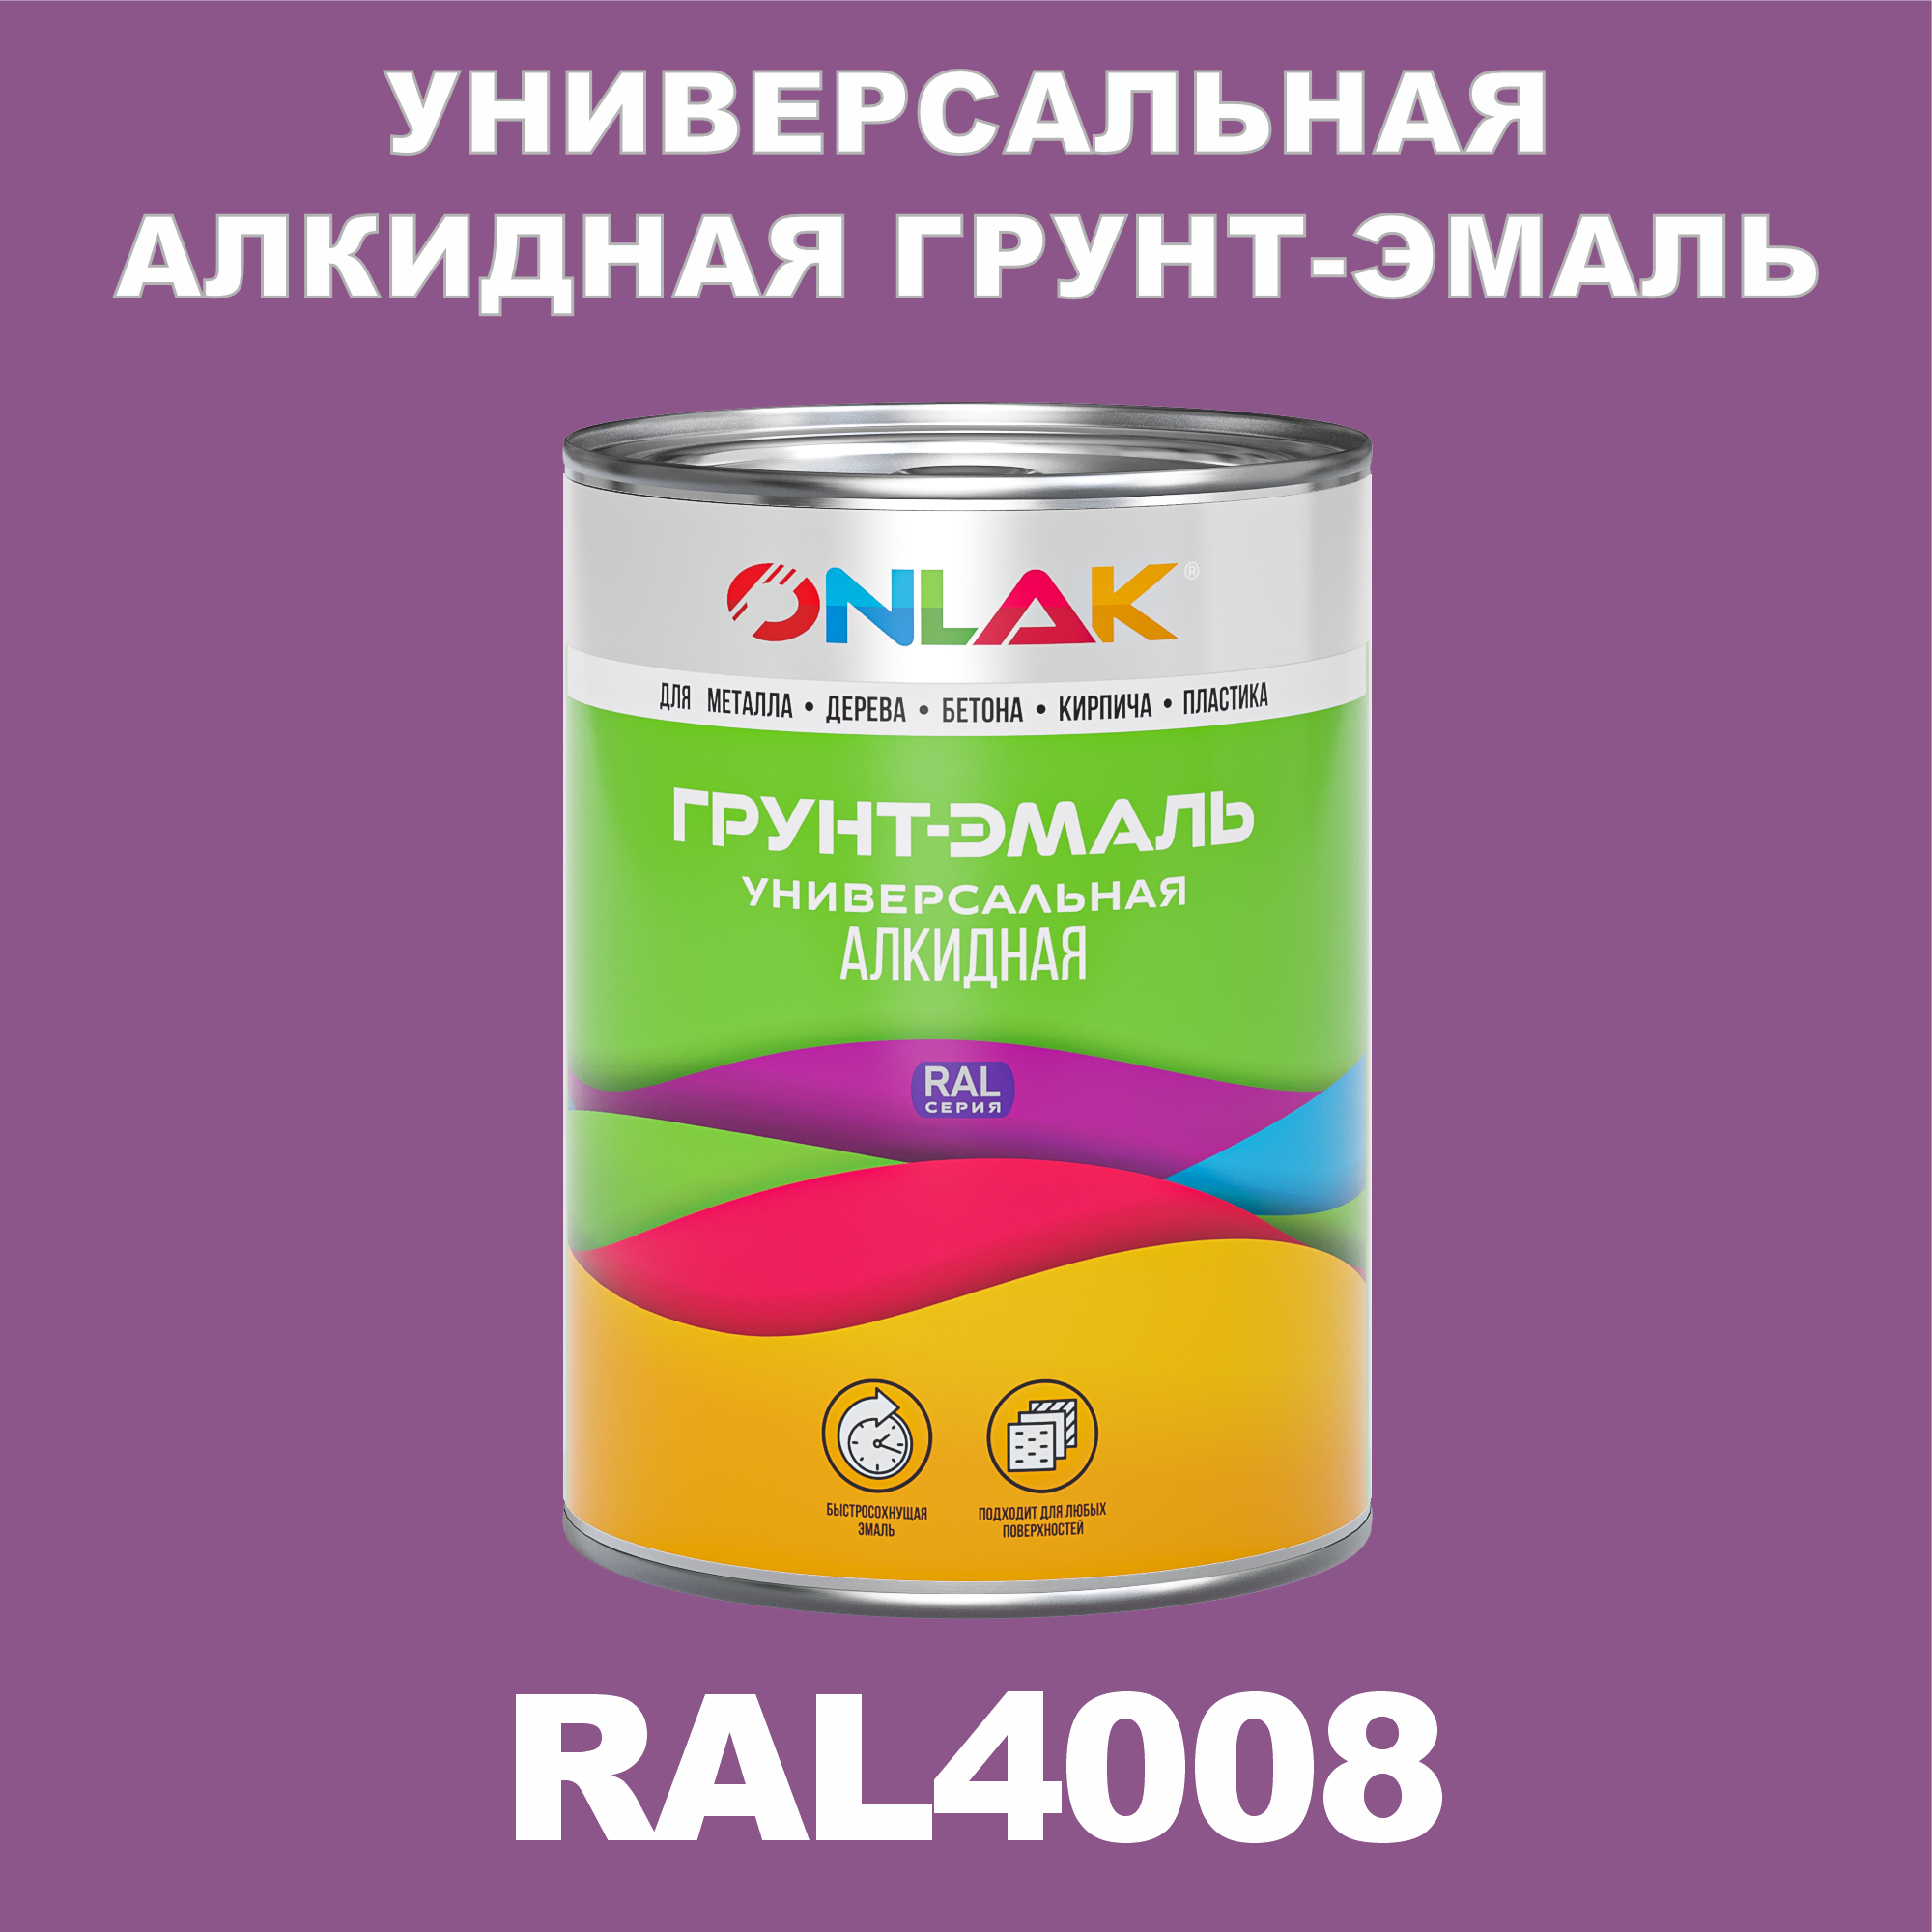 Грунт-эмаль ONLAK 1К RAL4008 антикоррозионная алкидная по металлу по ржавчине 1 кг антикоррозионная грунт эмаль onlak ral4001 фиолетовый 656 мл